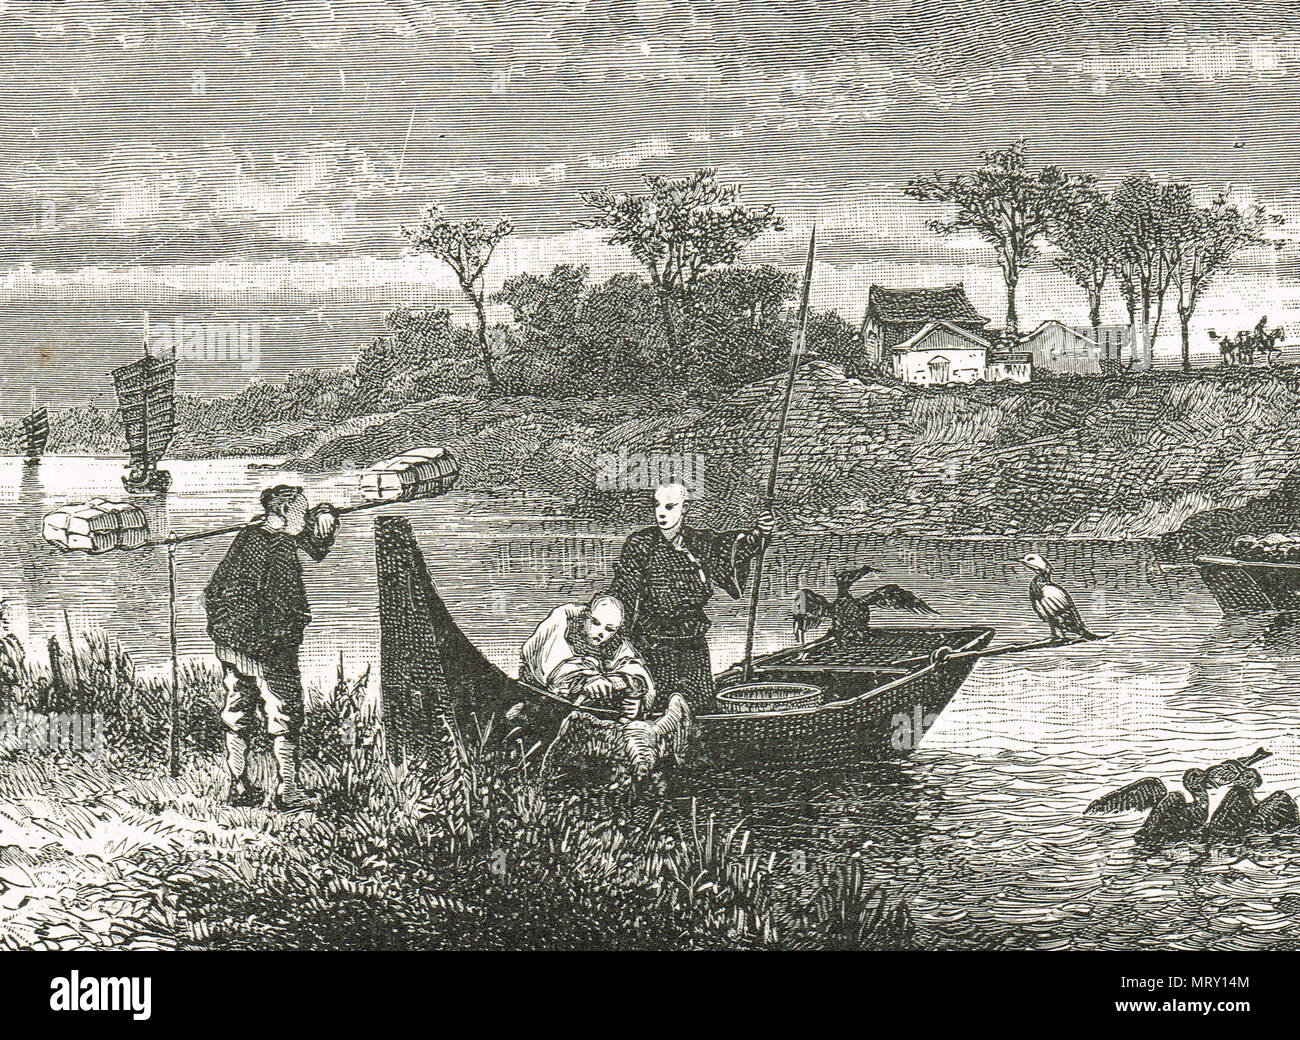 La pêche au cormoran en Asie, 19e siècle illustration Banque D'Images